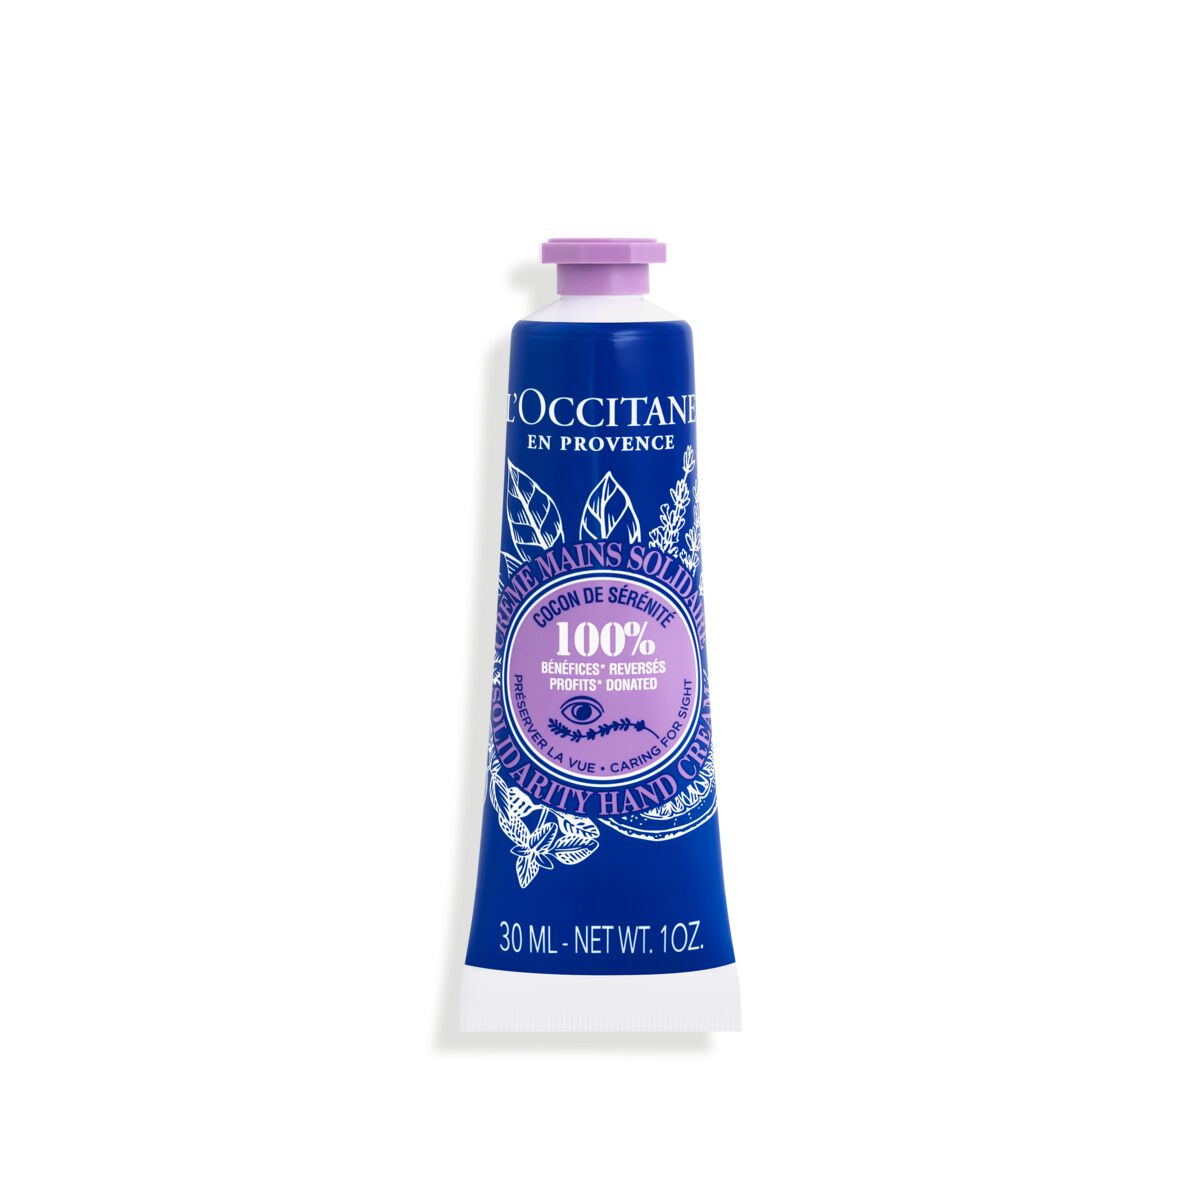 Crème mains solidaire 30ml - L'Occitane en Provence von L'Occitane en Provence